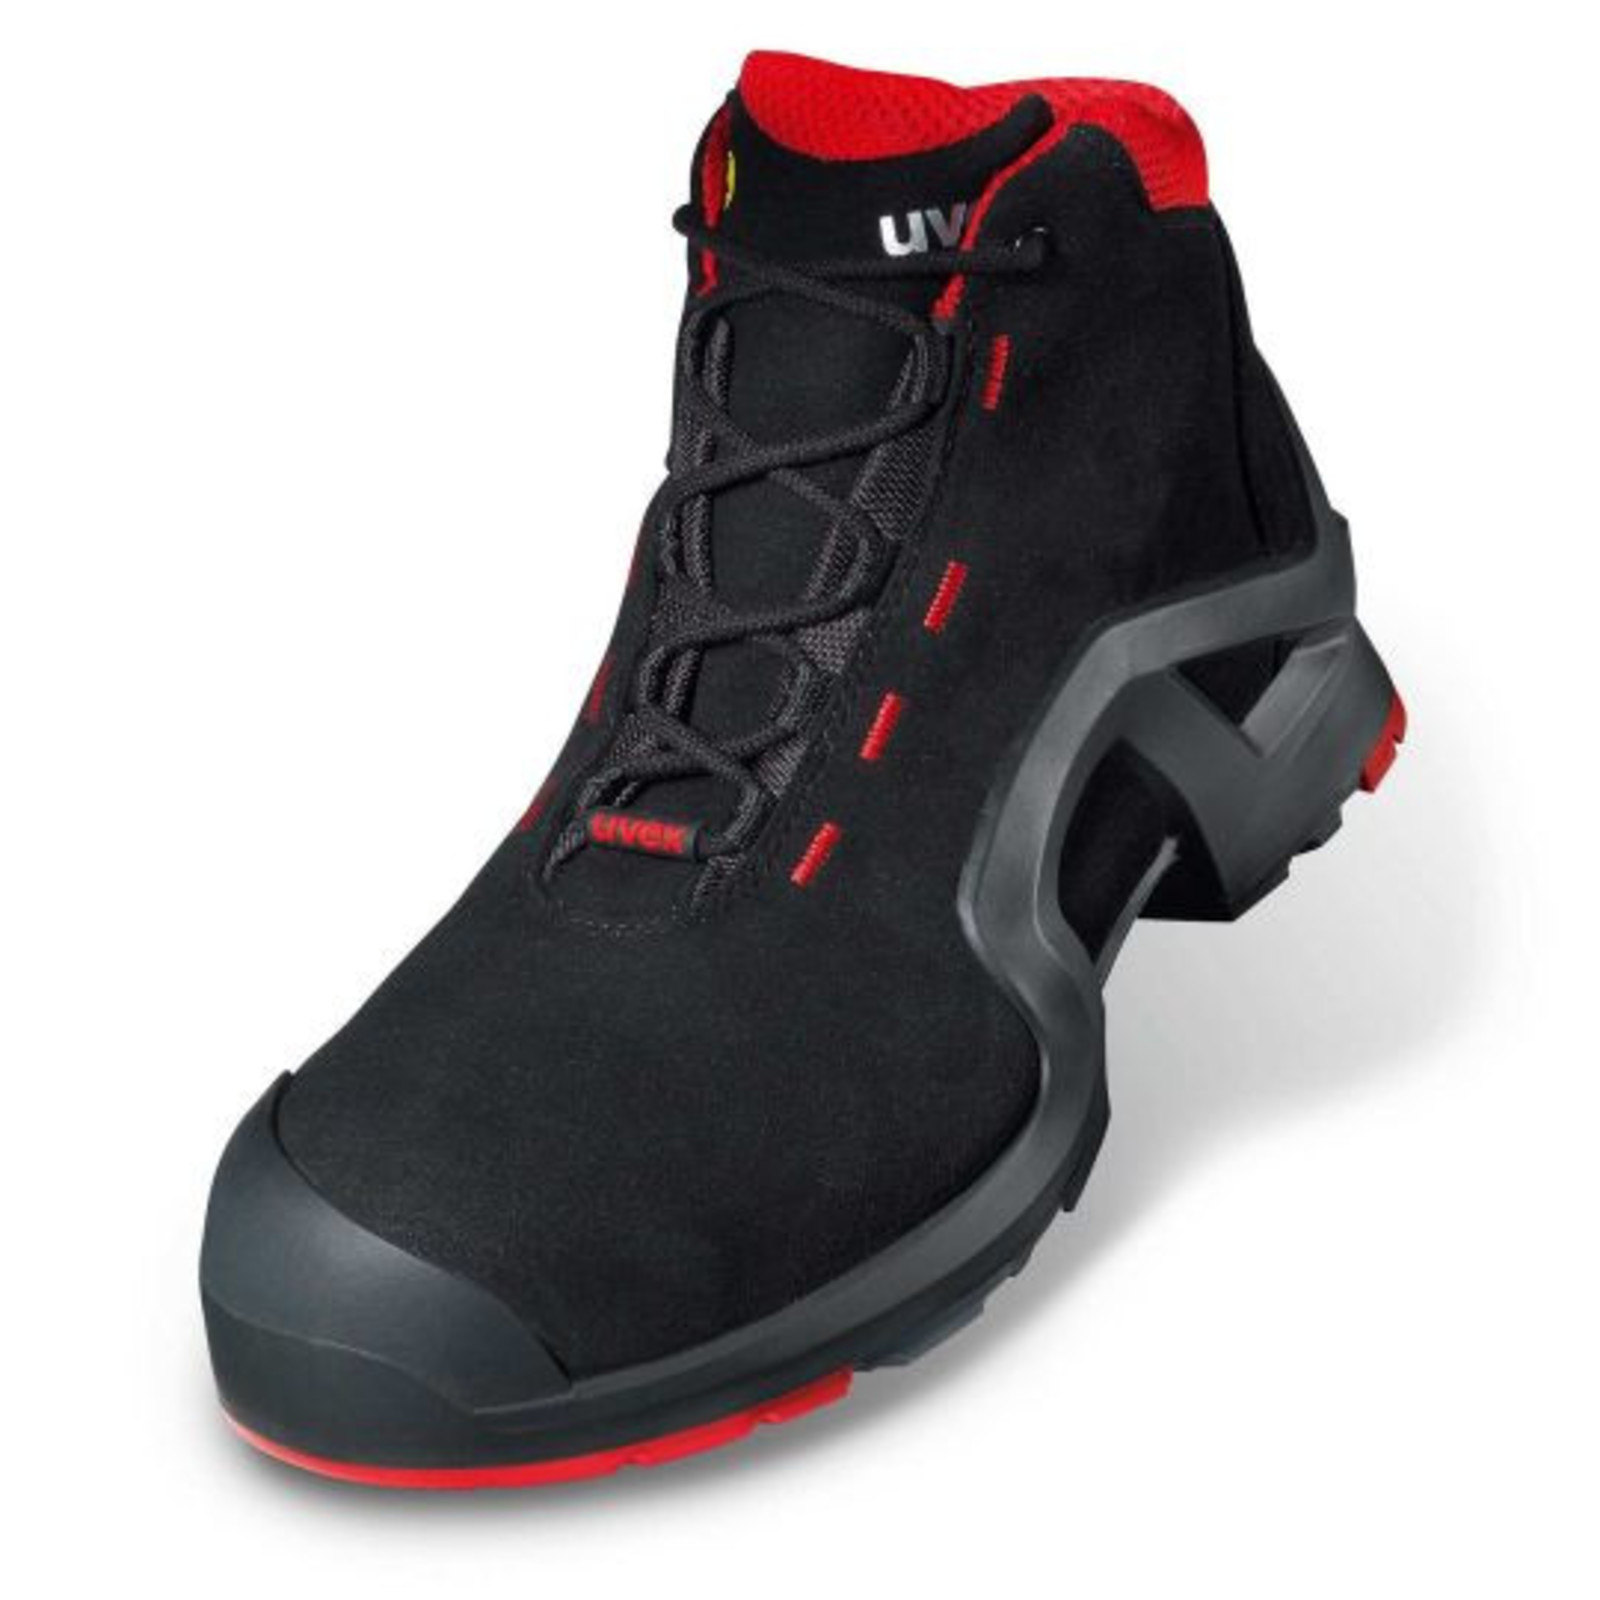 Vysoká bezpečnostná obuv Uvex 1 x-tended support S3 85172 - veľkosť: 40, farba: čierna/červená